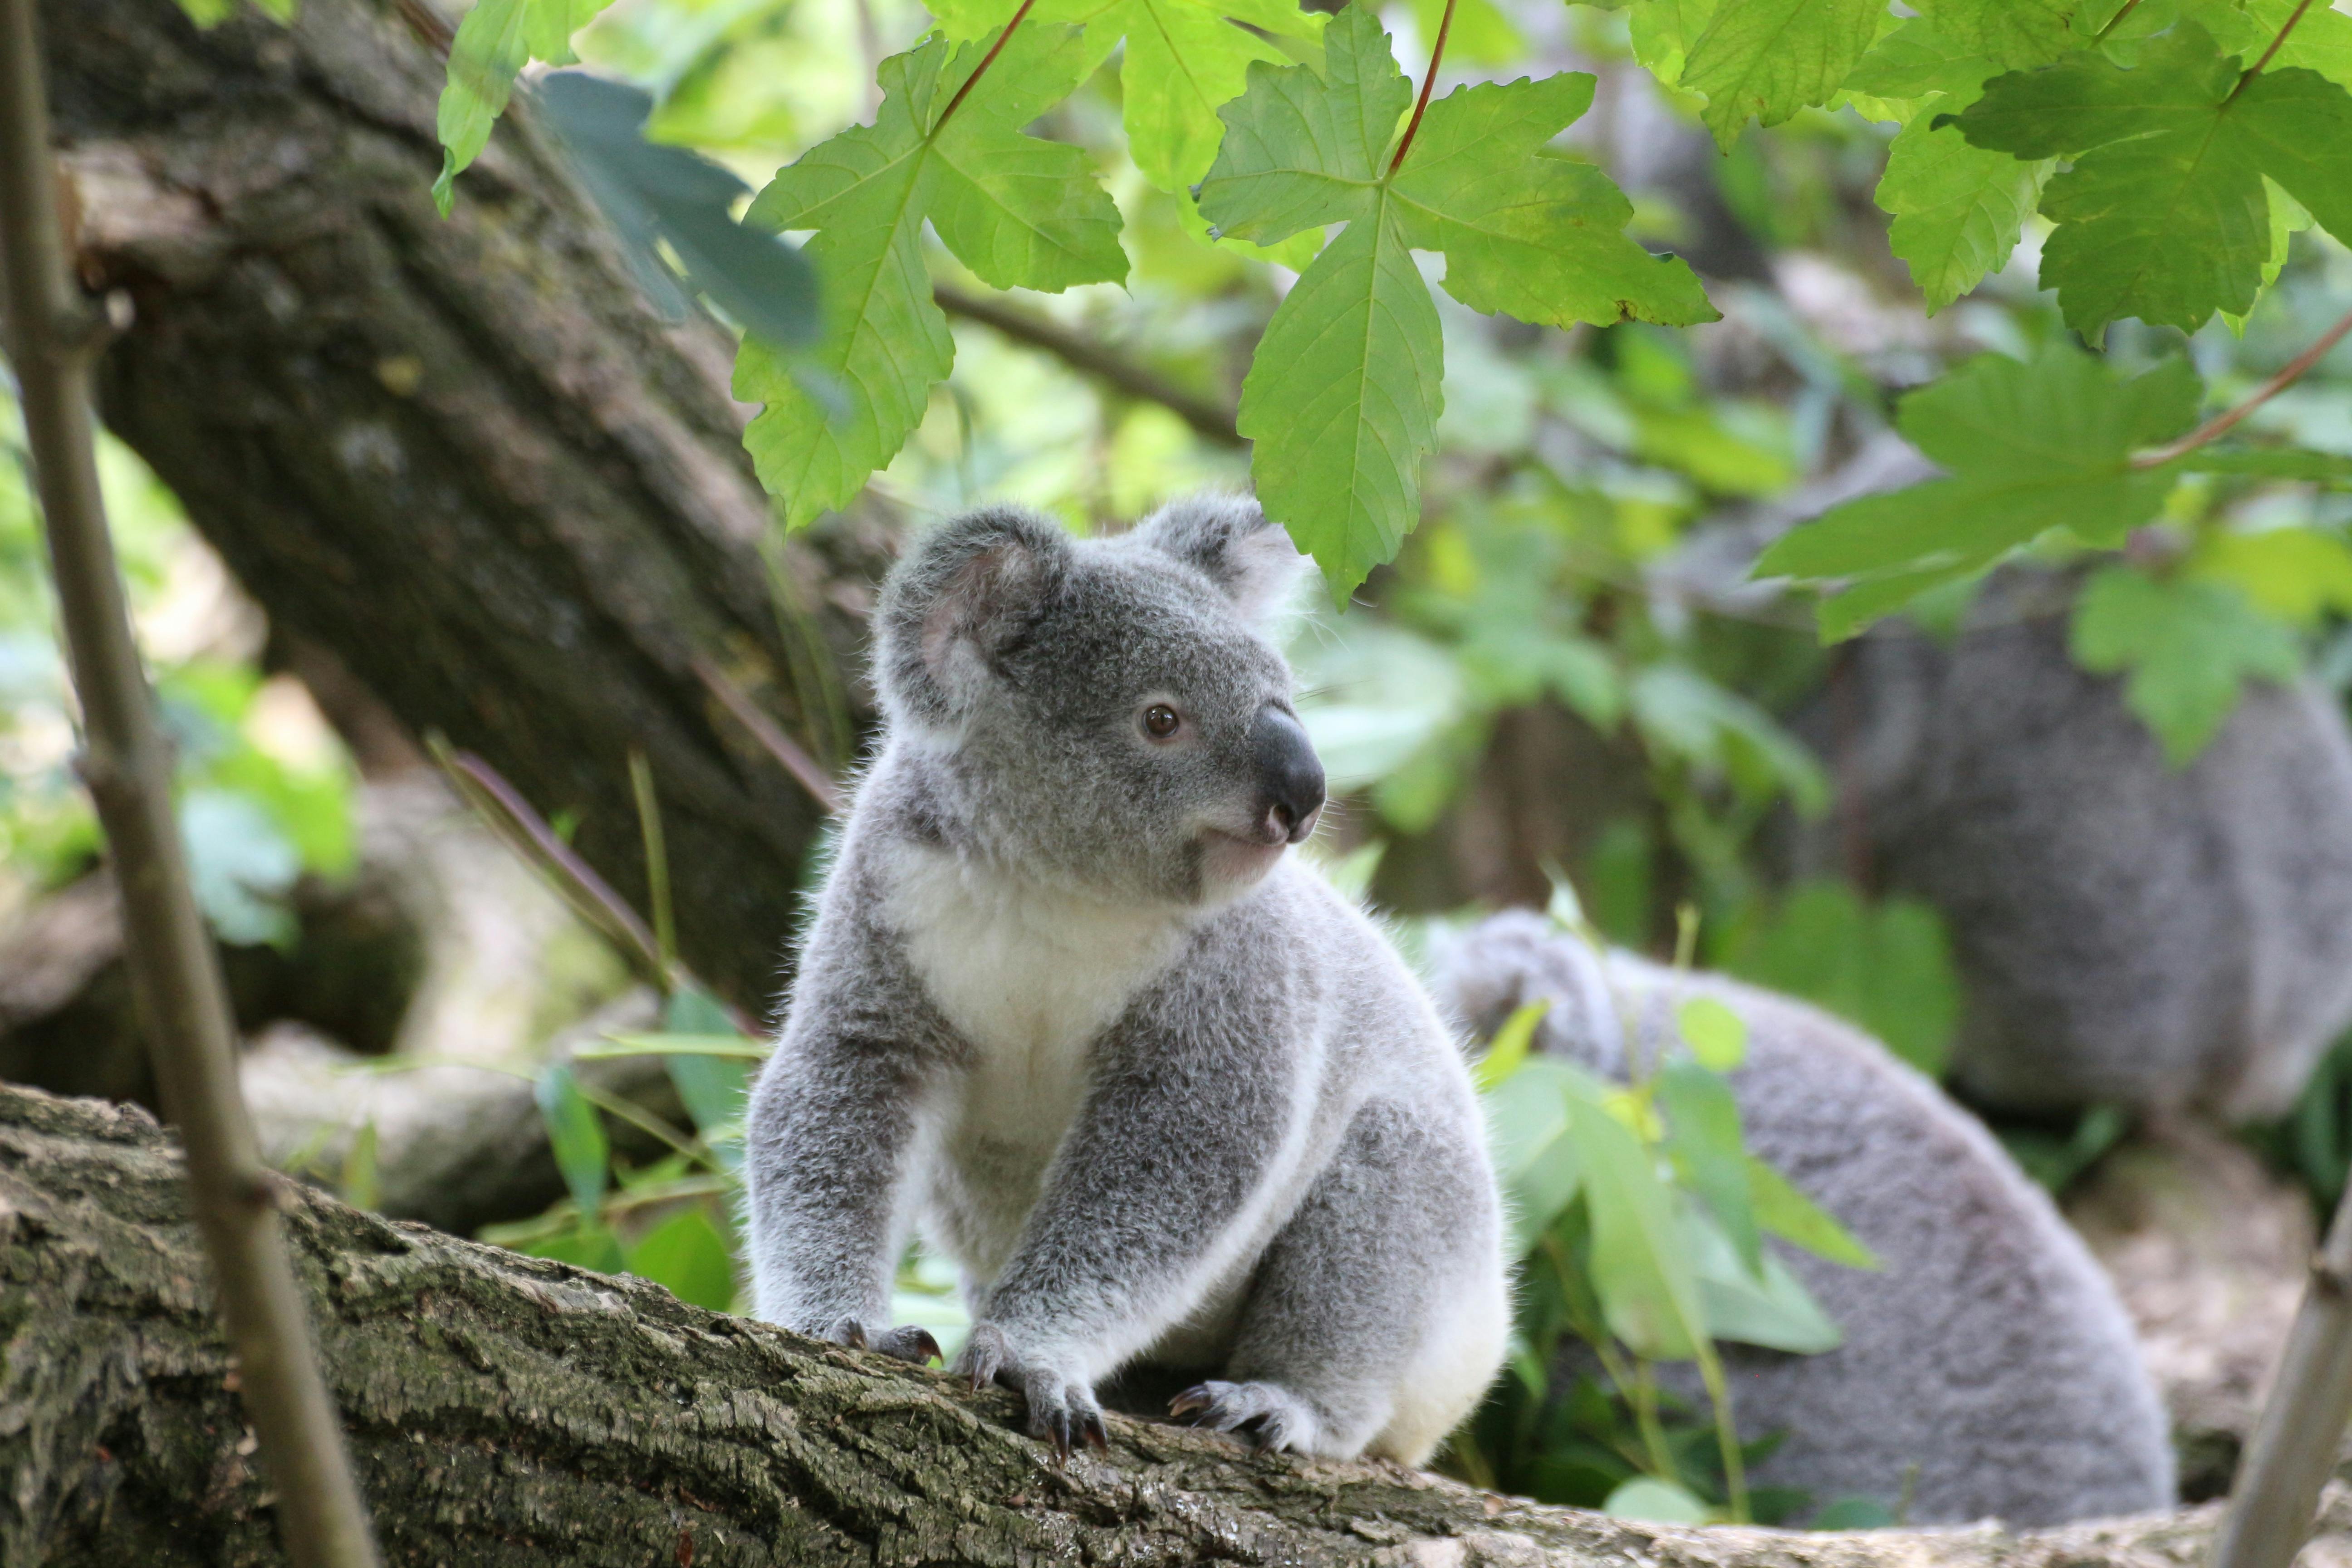 Wallpaper Koala Bear on Brown Tree Branch During Daytime Background   Download Free Image